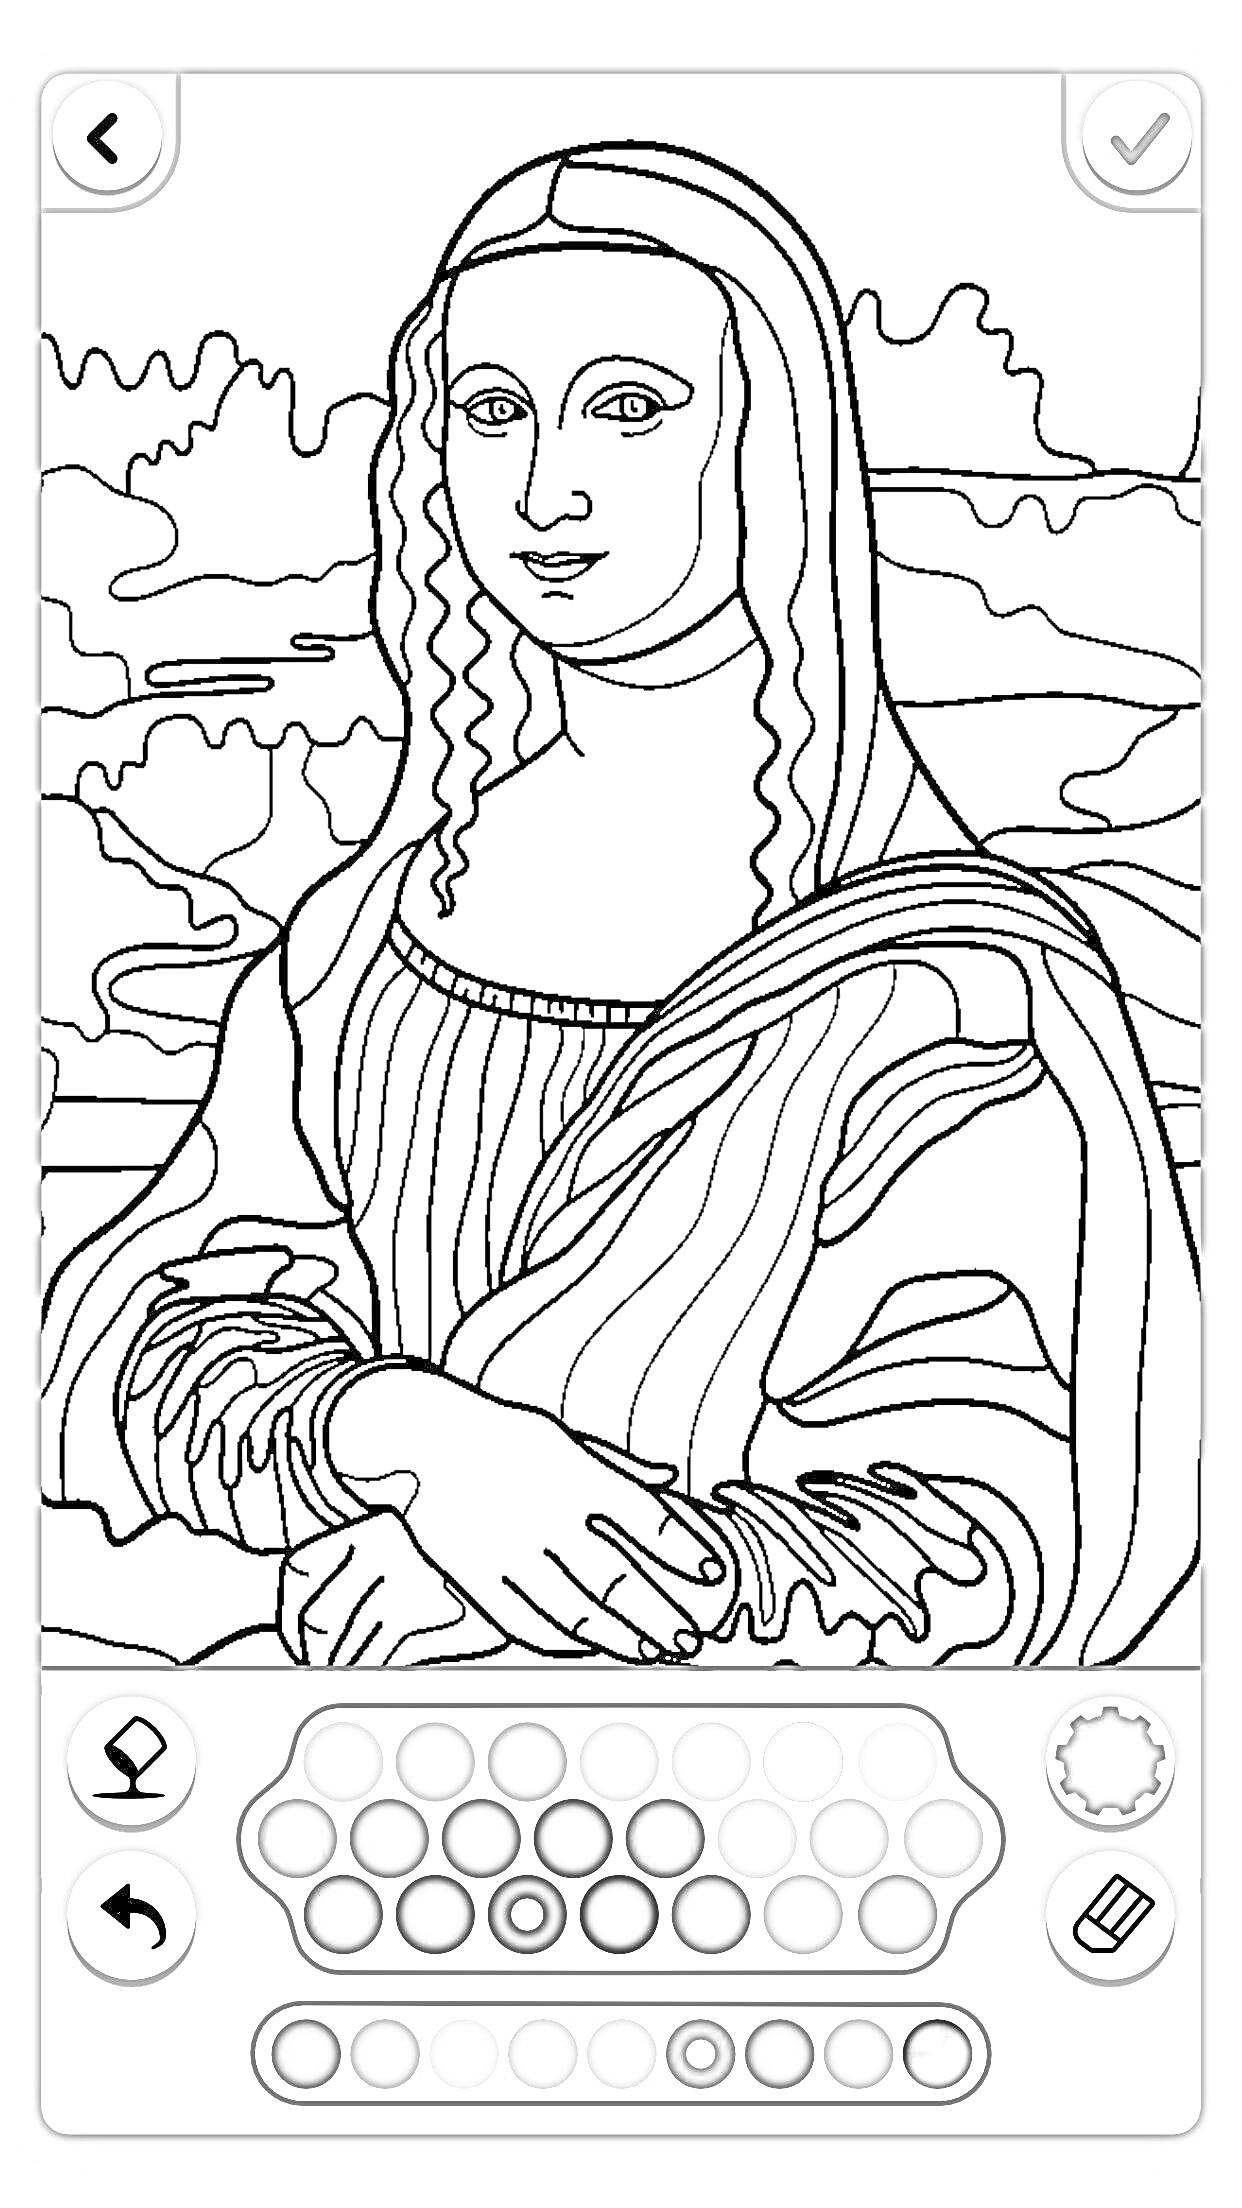 Раскраска Раскраска с изображением Моны Лизы